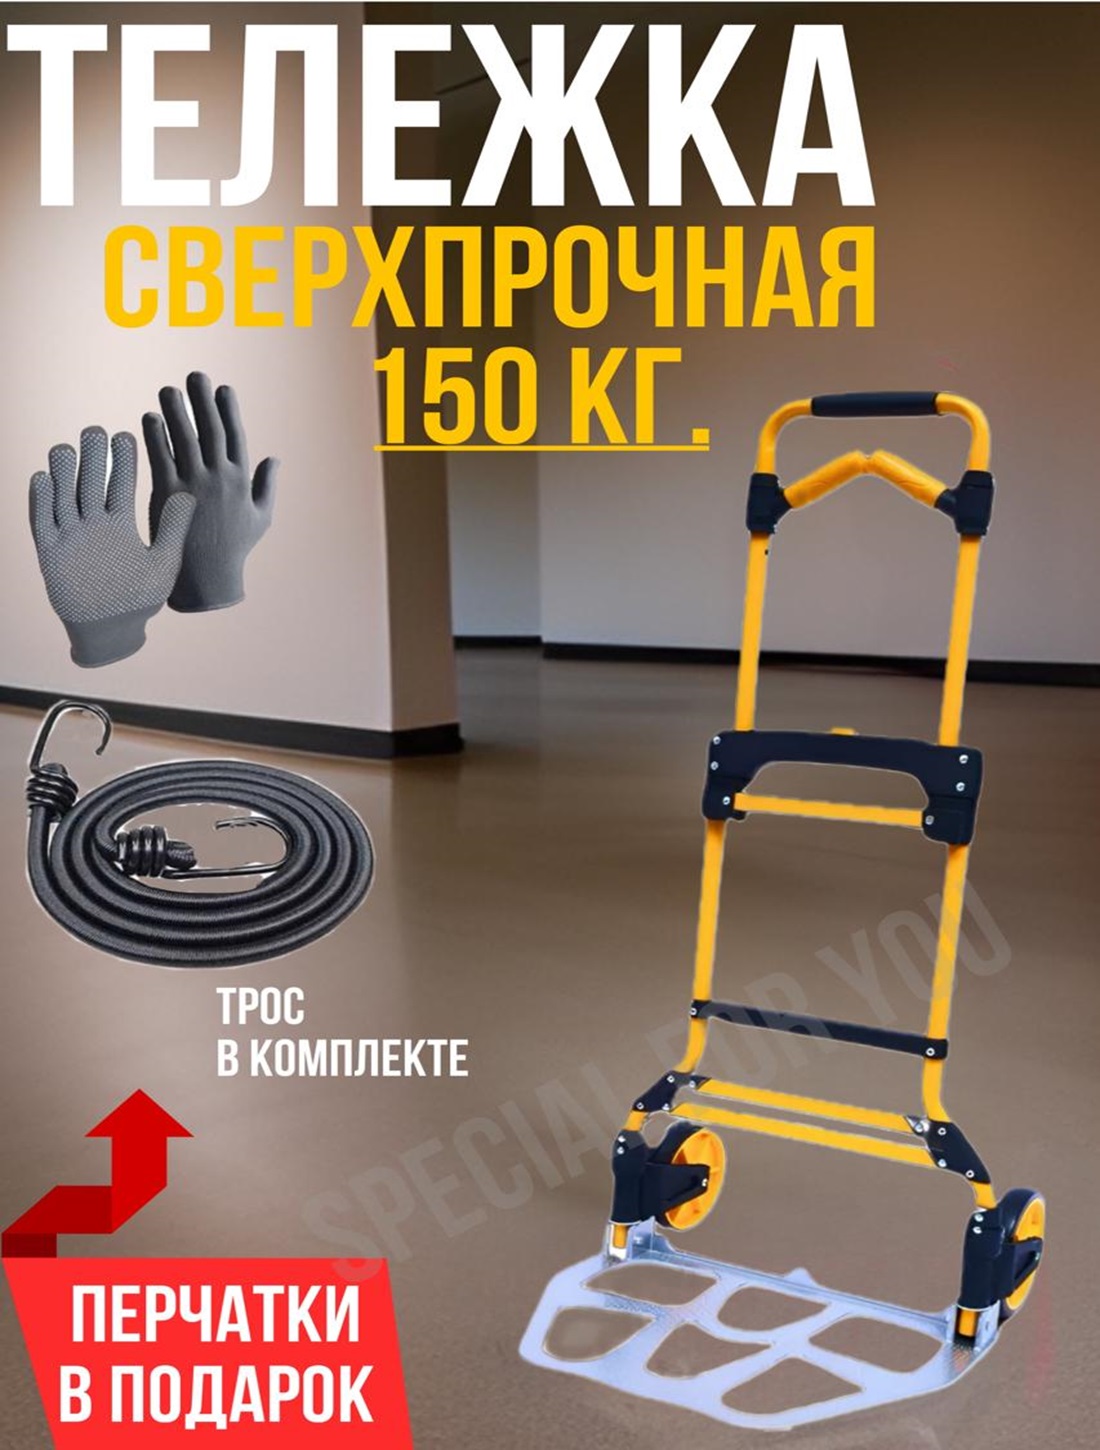 Тележка грузовая сверхпрочная SPECIAL FOR YOU нагрузка 150 кг.Желтая - купить в Москве, цены на Мегамаркет | 600018331229